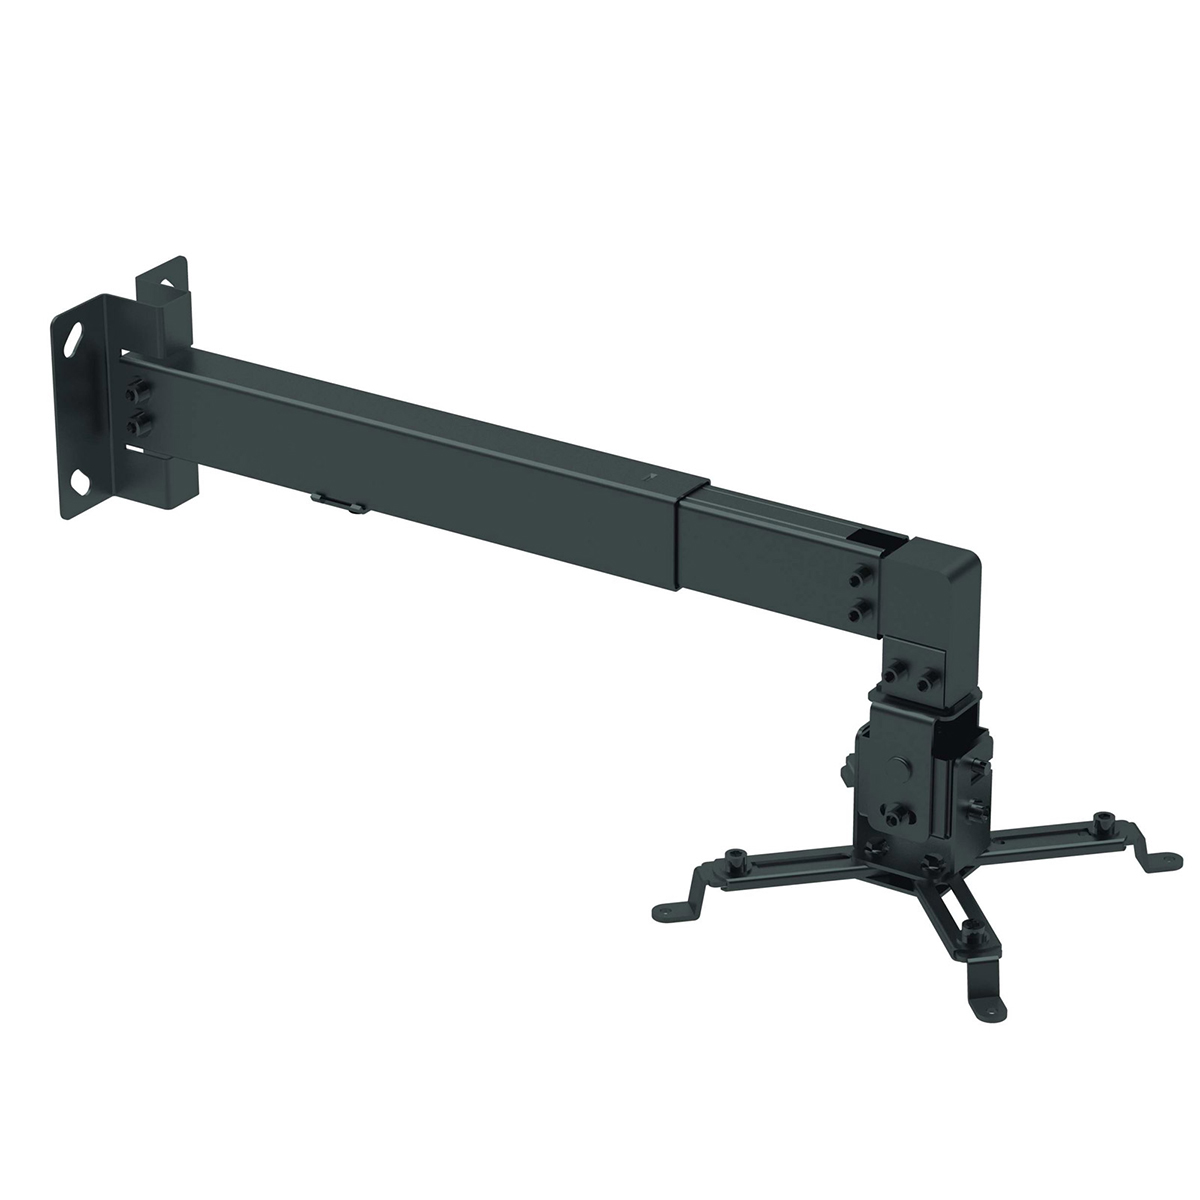 Кронштейн для проекторов Arm media PROJECTOR-3W, до 20 кг, цвет черный.